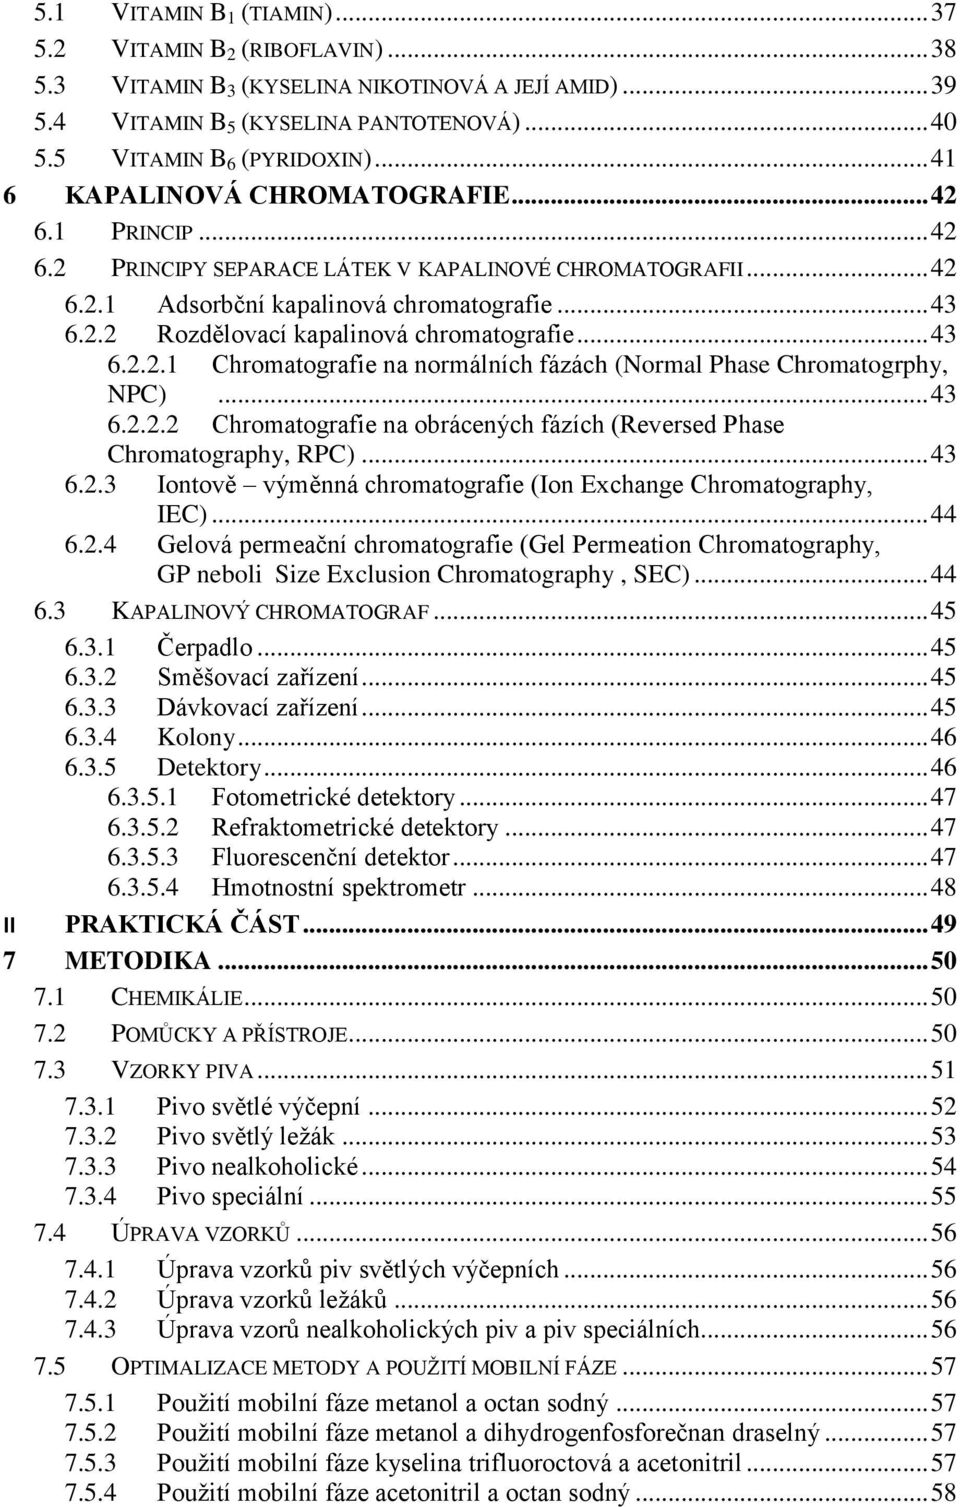 .. 43 6.2.2.1 Chromatografie na normálních fázách (Normal Phase Chromatogrphy, NPC)... 43 6.2.2.2 Chromatografie na obrácených fázích (Reversed Phase Chromatography, RPC)... 43 6.2.3 Iontově výměnná chromatografie (Ion Exchange Chromatography, IEC).